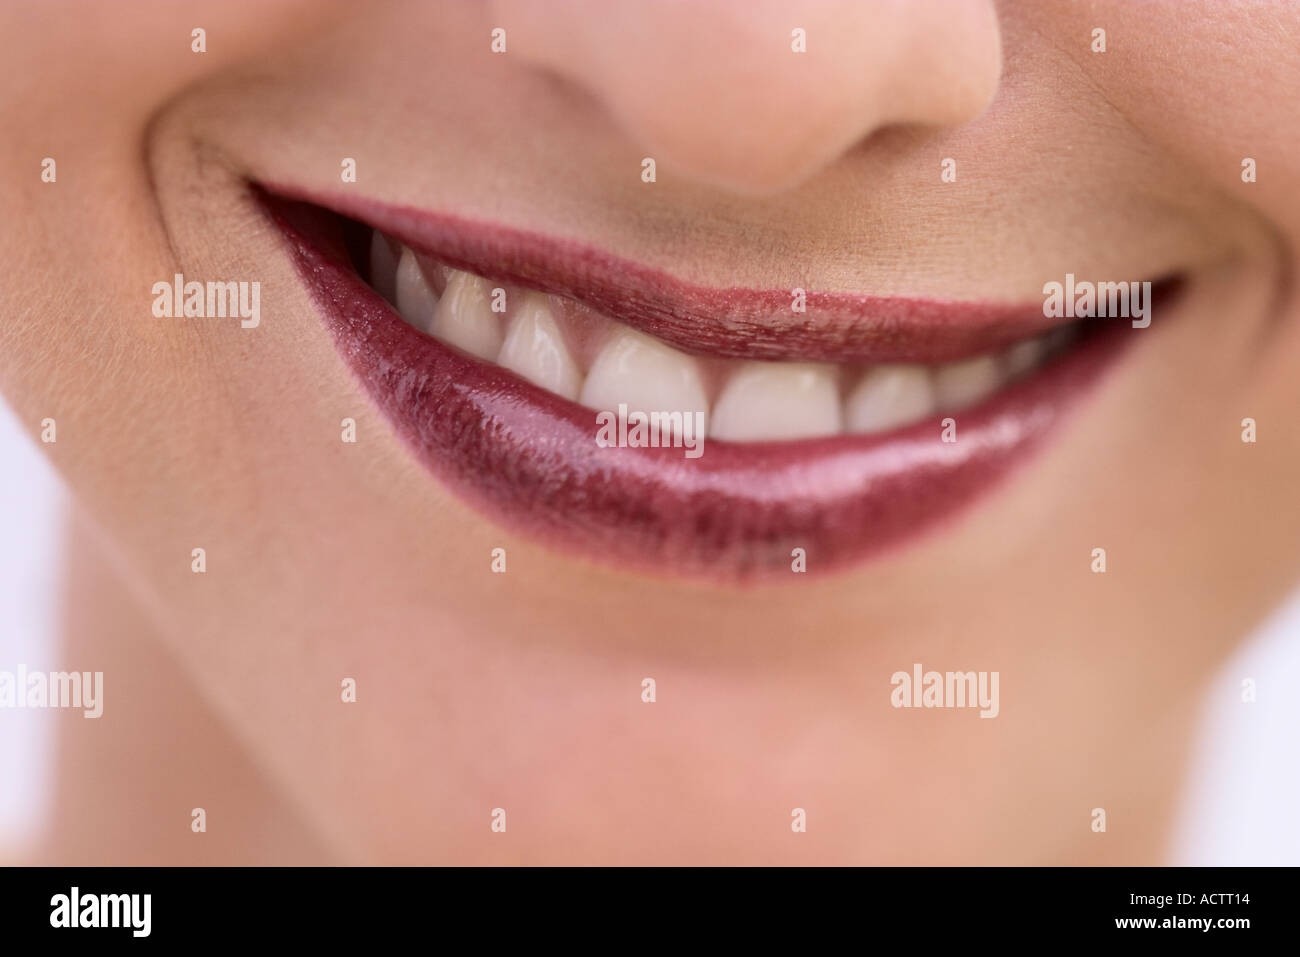 Bouche au sourire d'une femme avec des lèvres rouge claret Banque D'Images